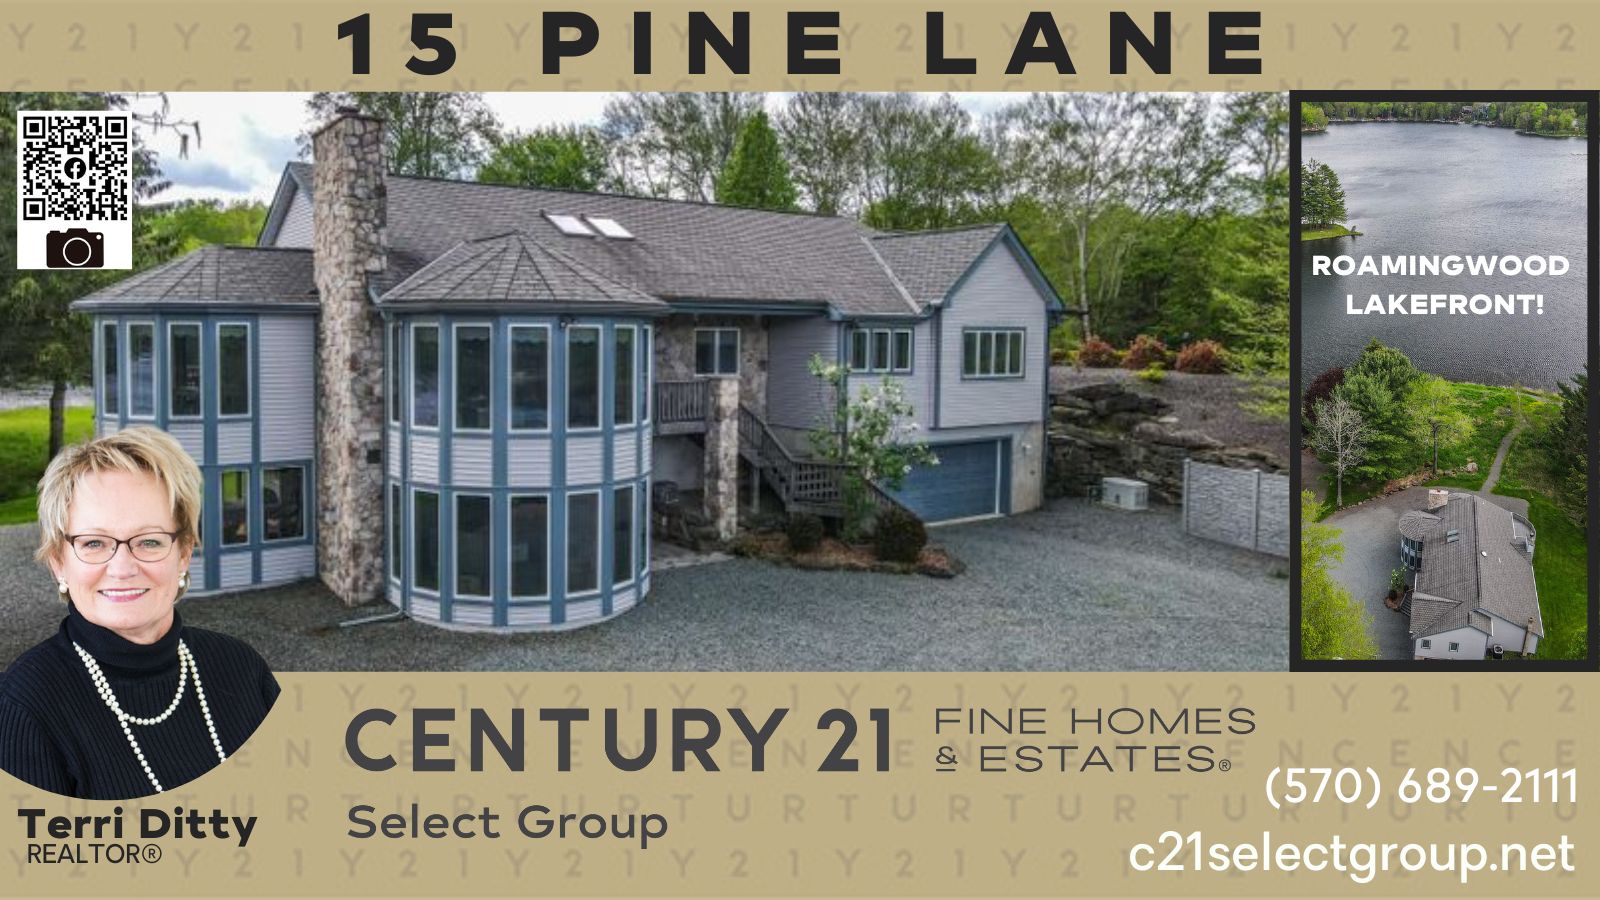 REDUCED PRICE! 15 Pine Lane: ROAMINGWOOD LAKEFRONT